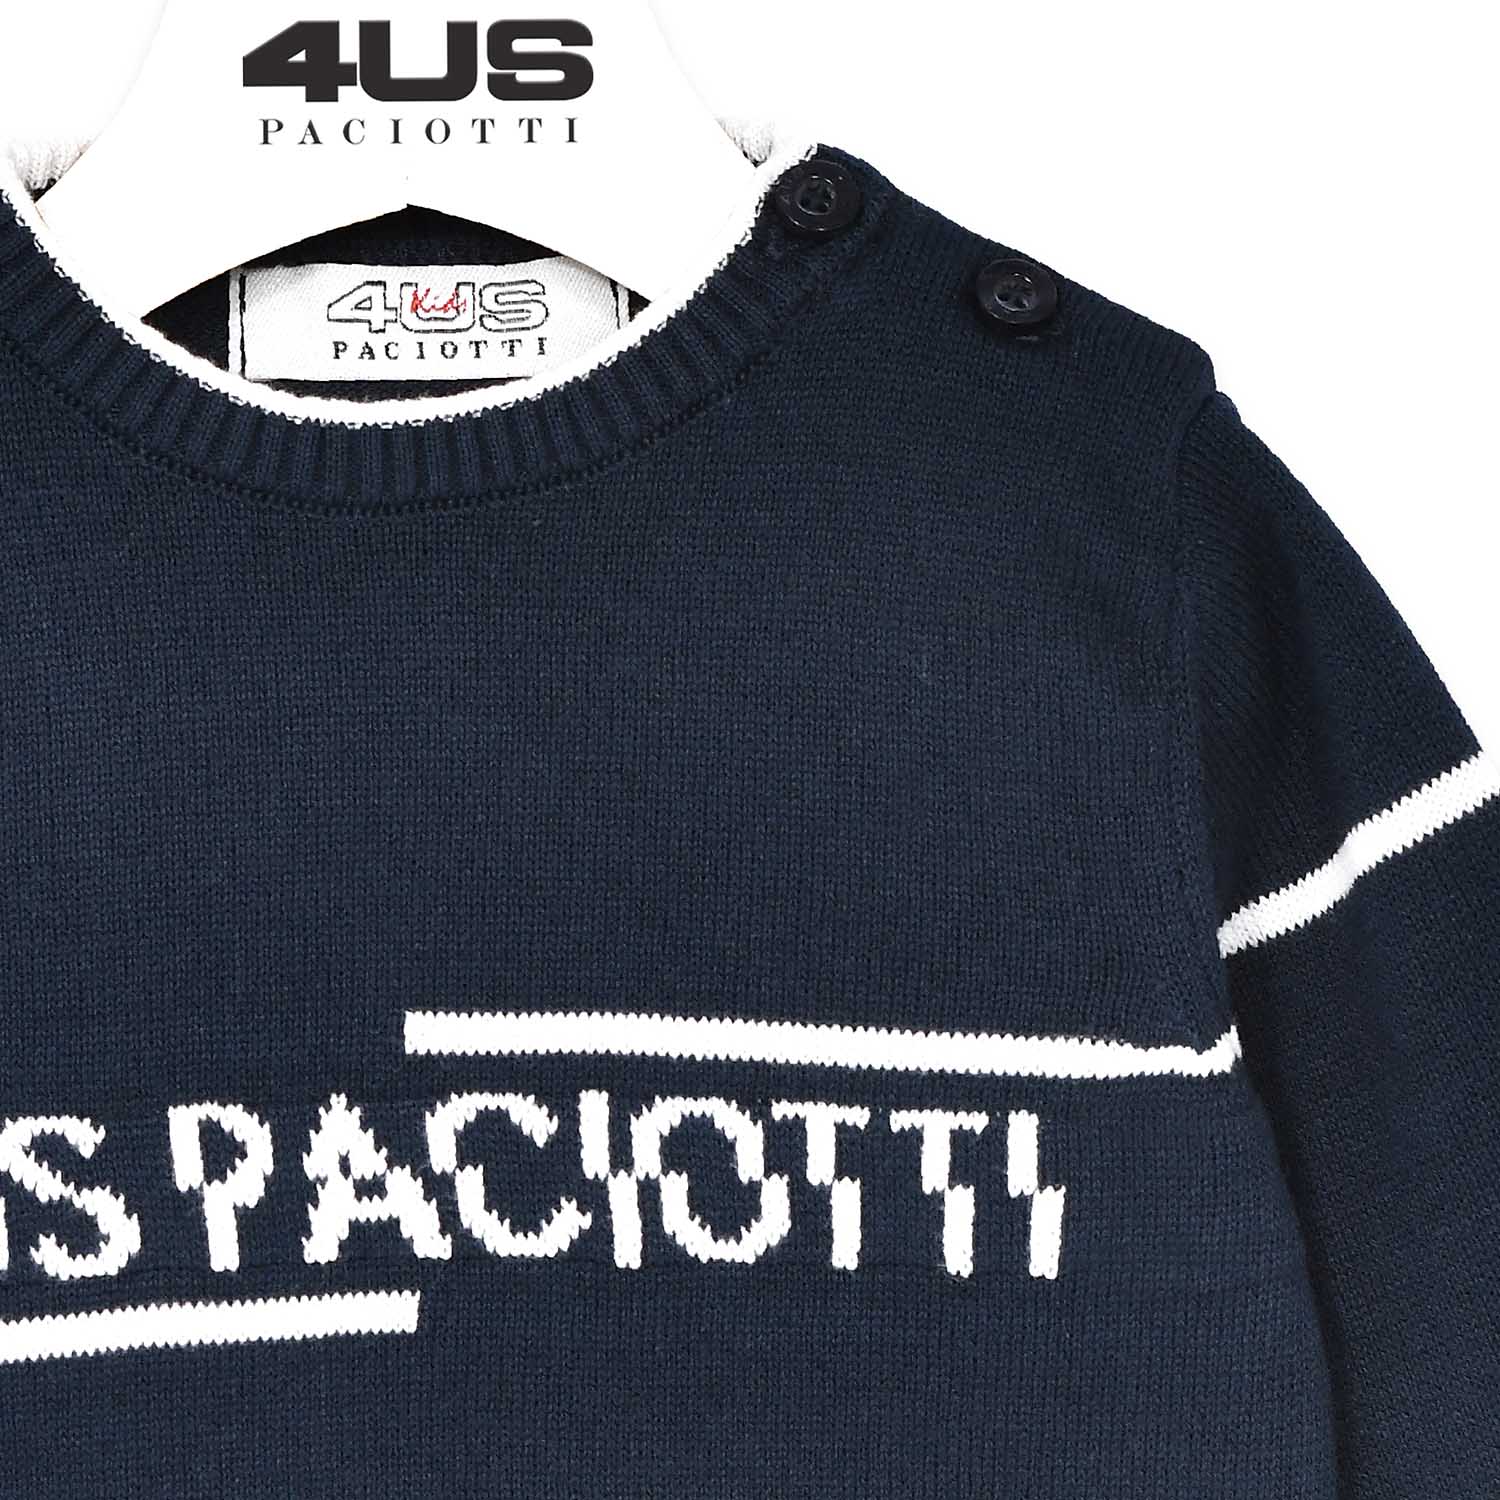 Maglione baby boy 4US Paciotti